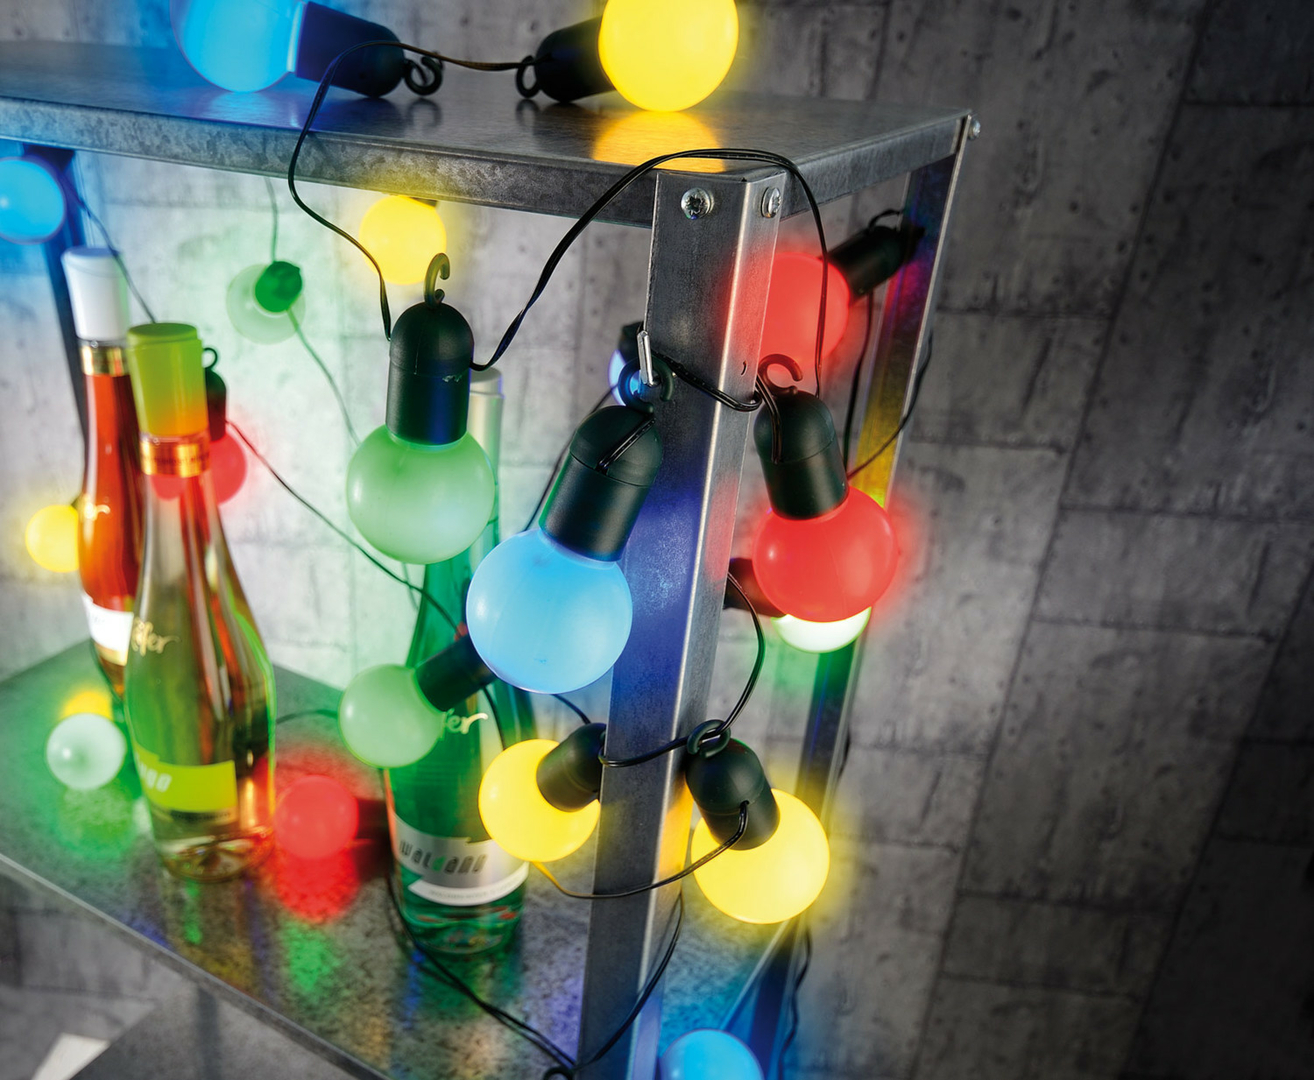 guirlande-lumineuse-leds-guinguette-4-75-m-20-ampoules-led-1w-4-couleurs vendue sur deco-lumineuse.fr